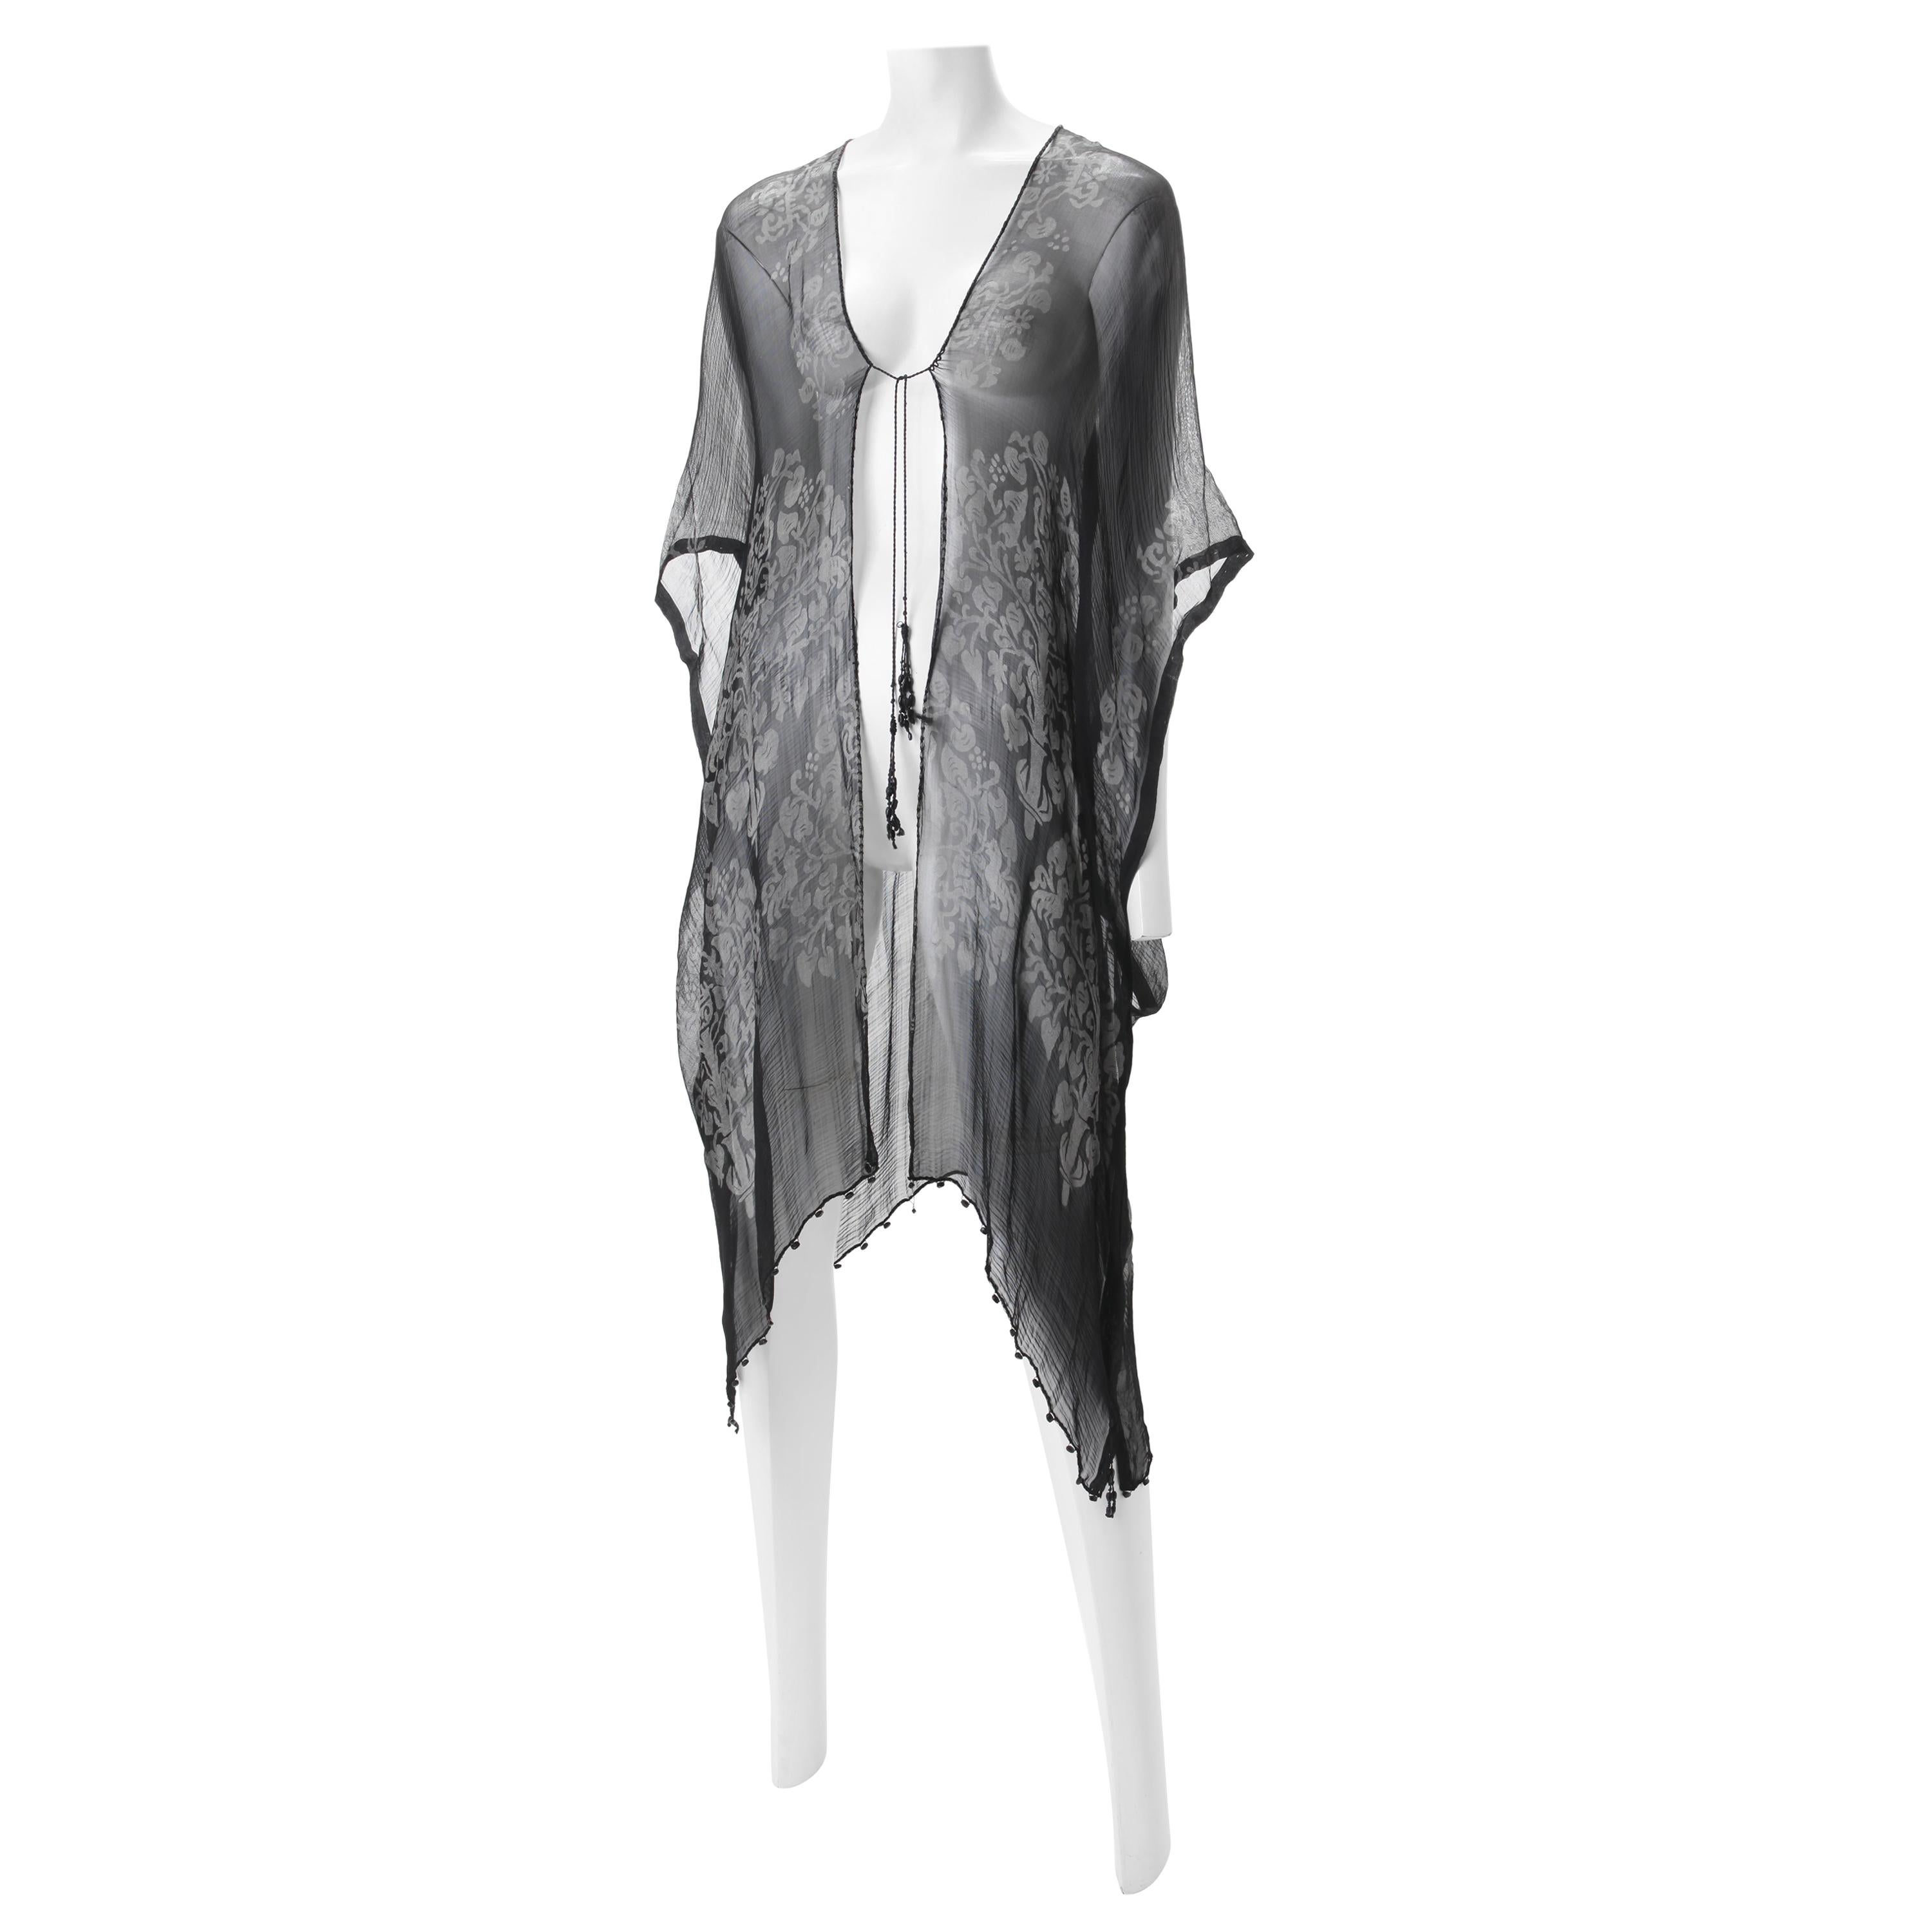 Maria Monaci Gallenga 1920s Silk Stenciled Robe 